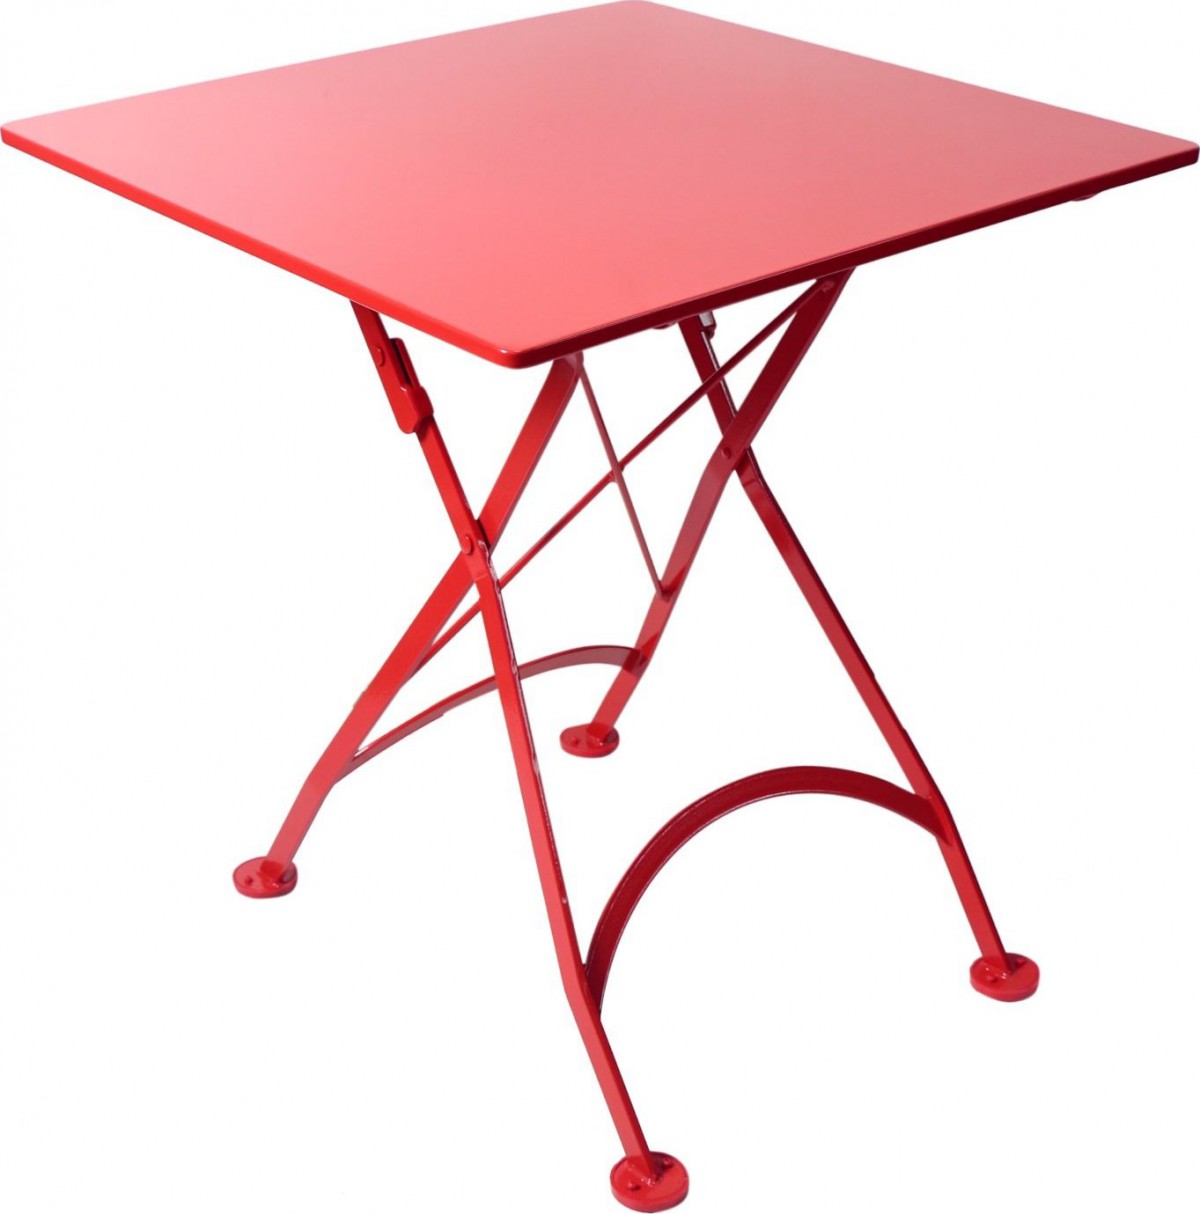 Furniture DesignHouse 28″ Square Folding Bistro Table